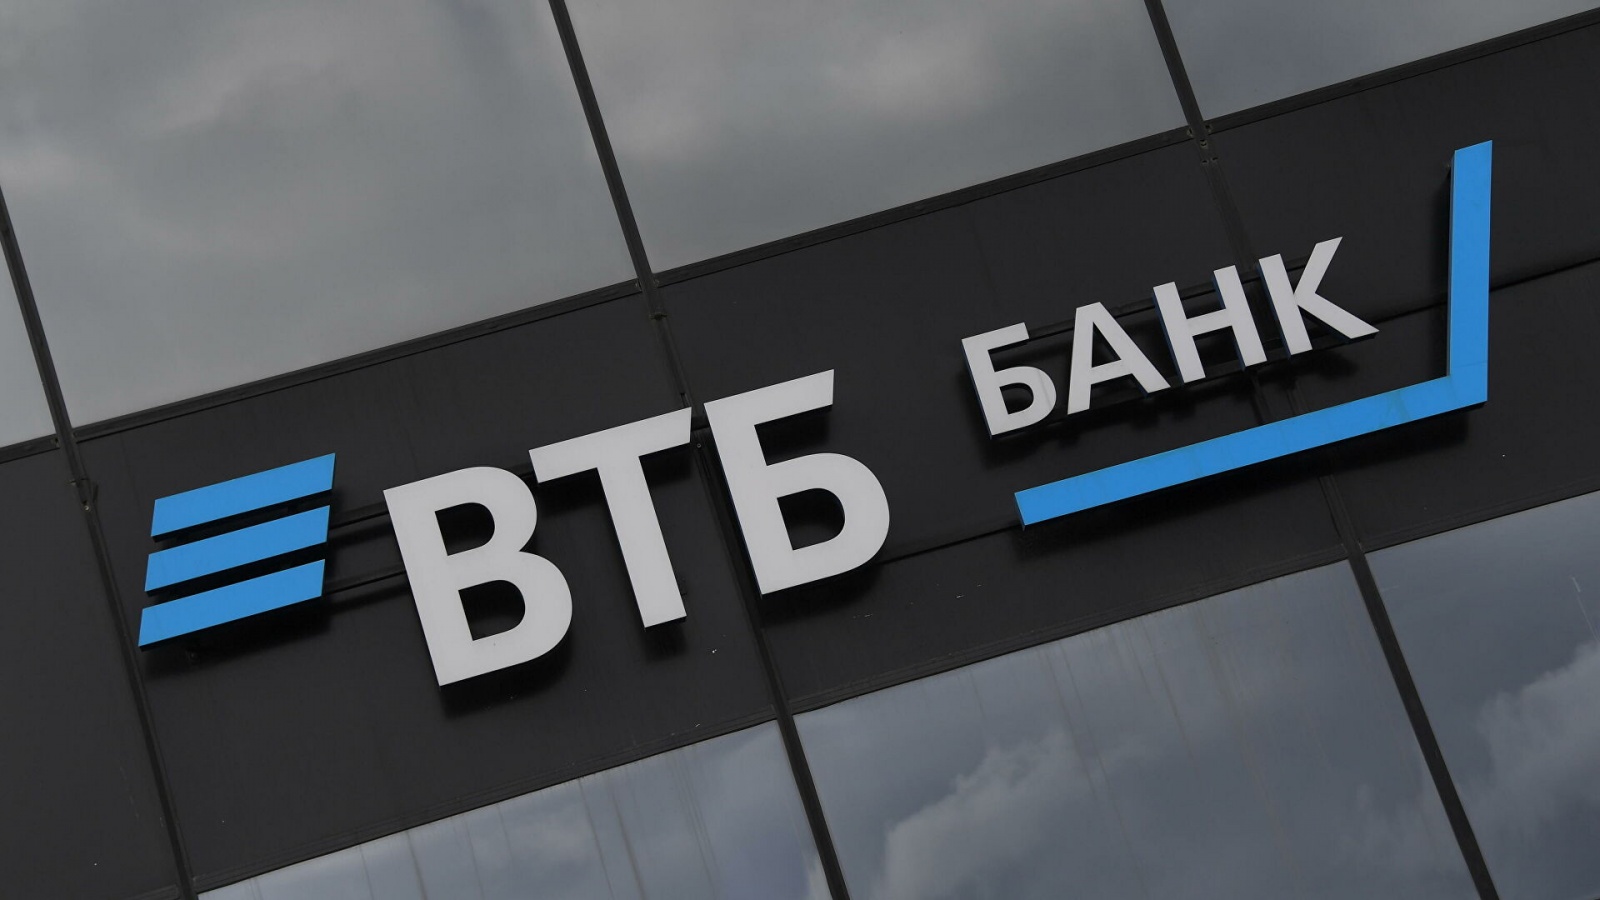 ВТБ снизил до 1 рубля стоимость услуги внесения наличной выручки на счет